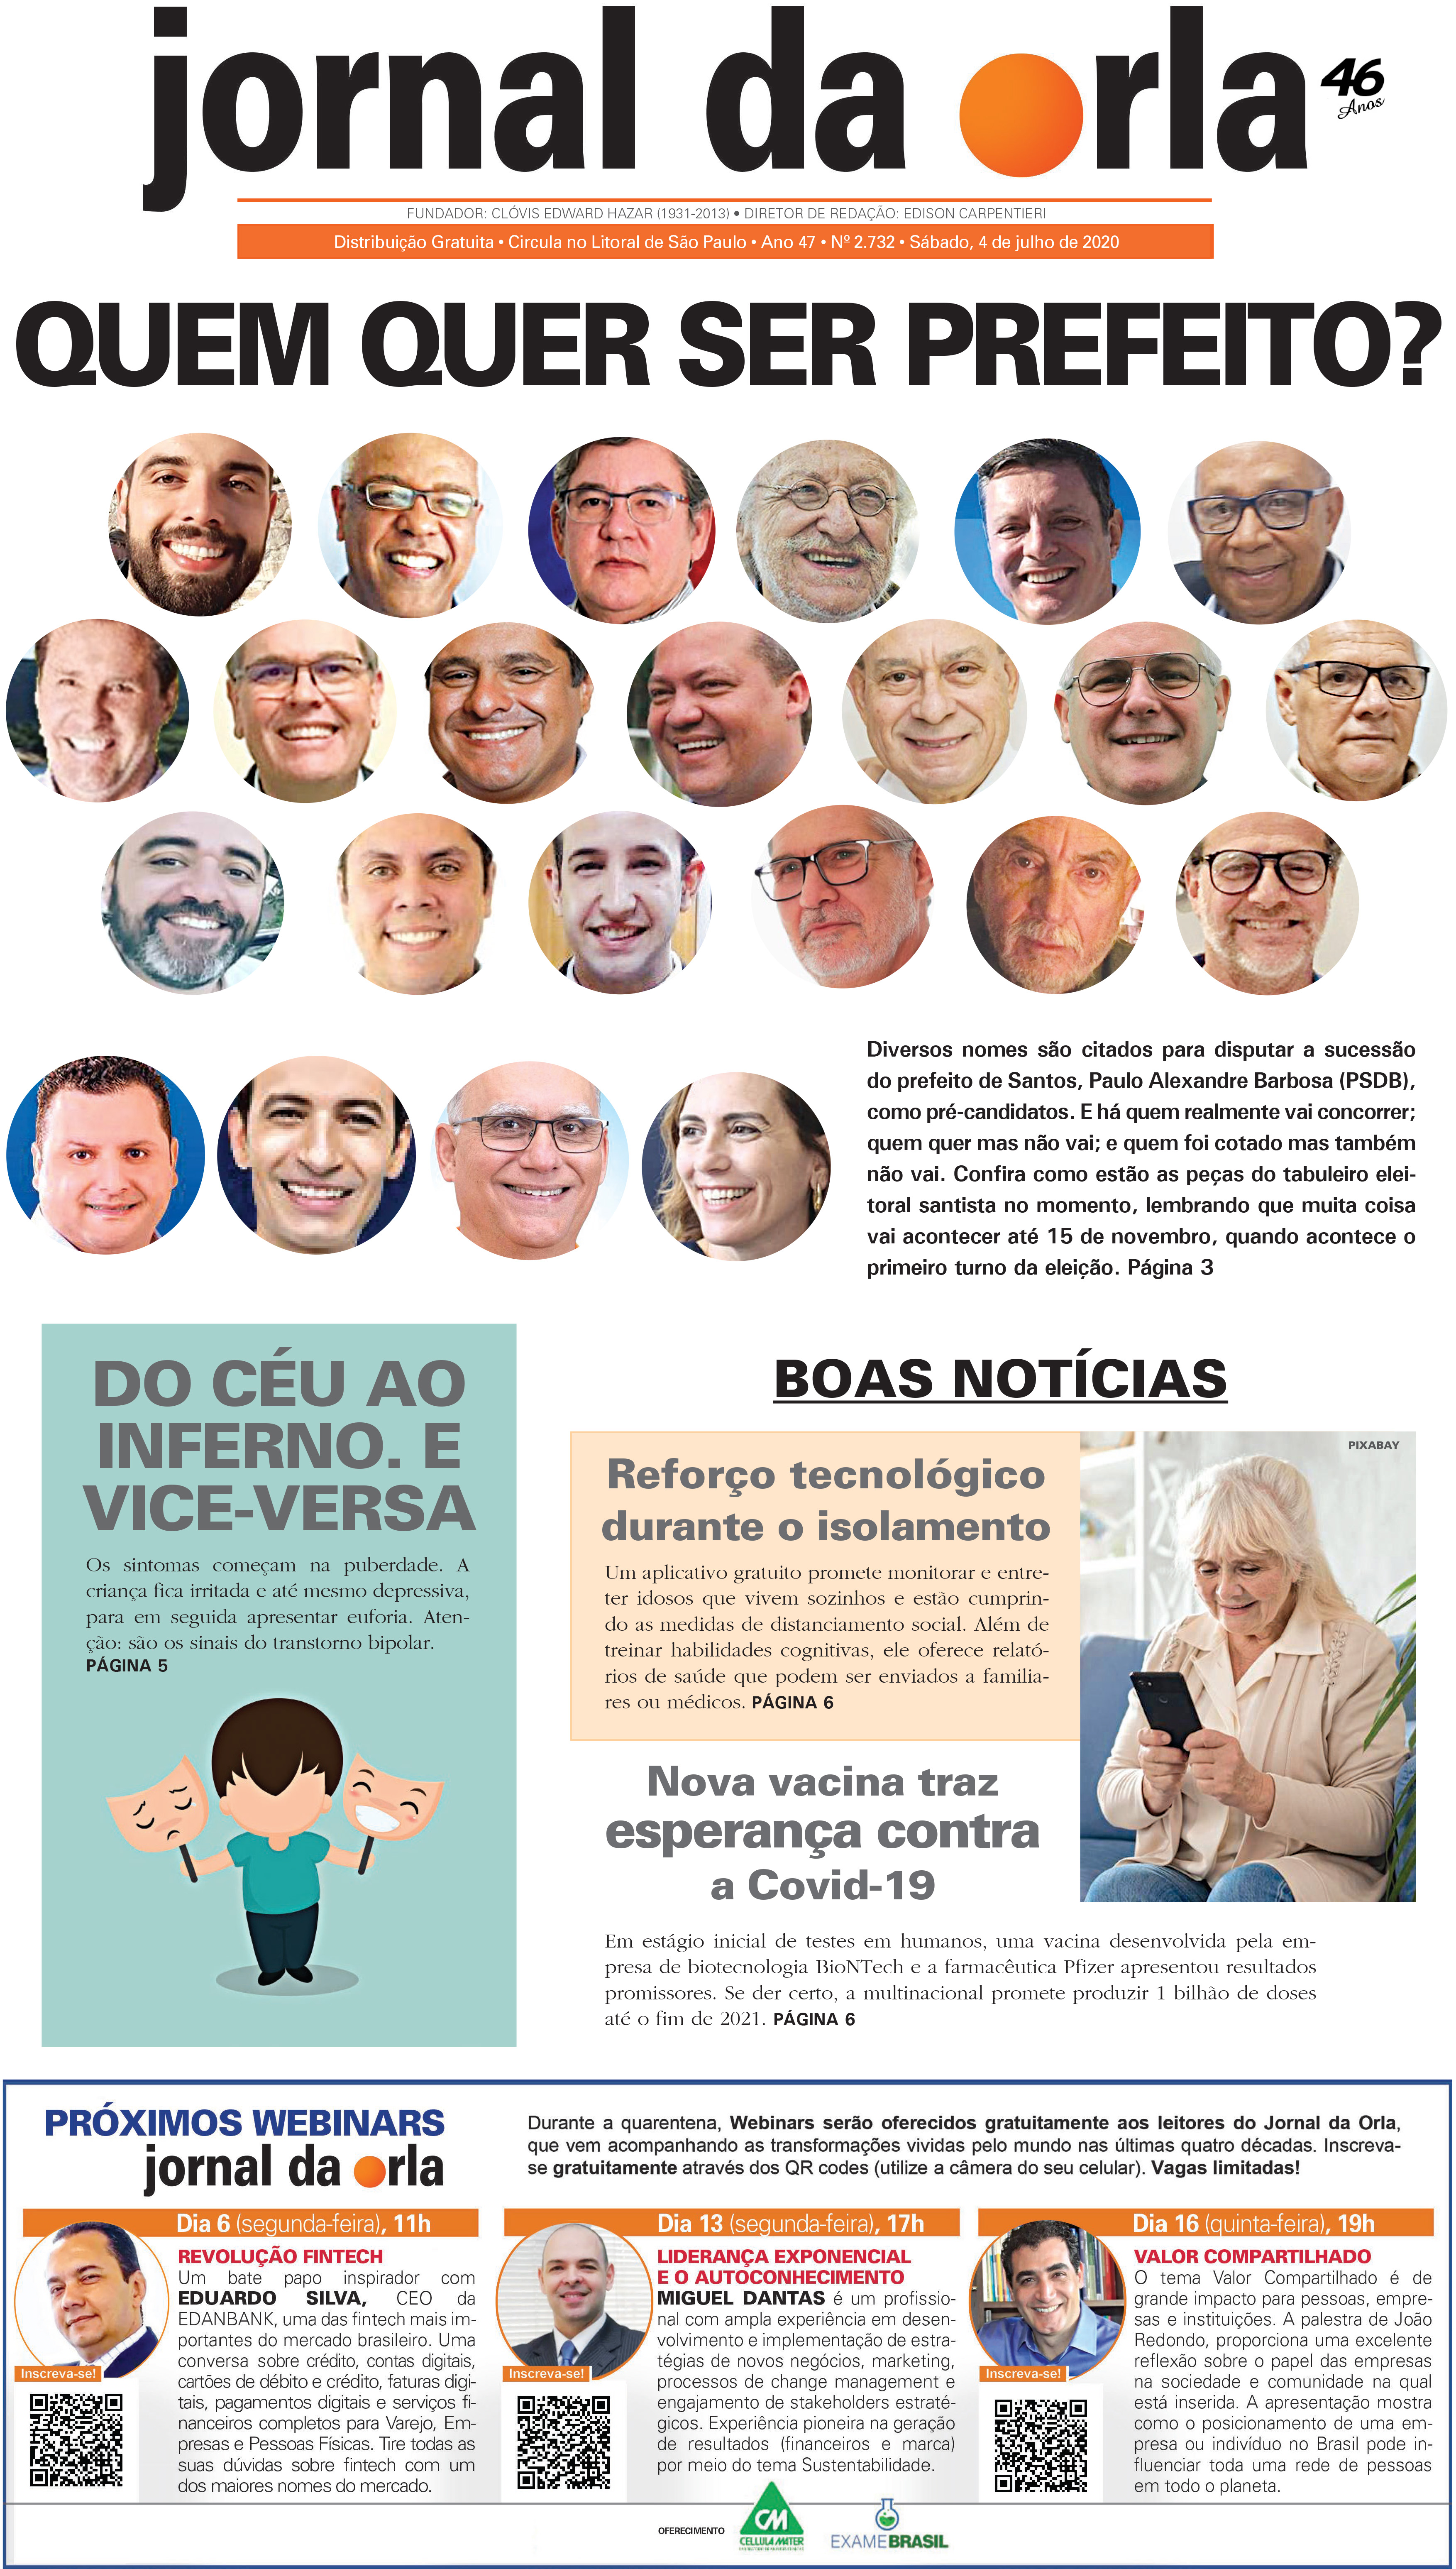 04/07/2020 | Jornal da Orla